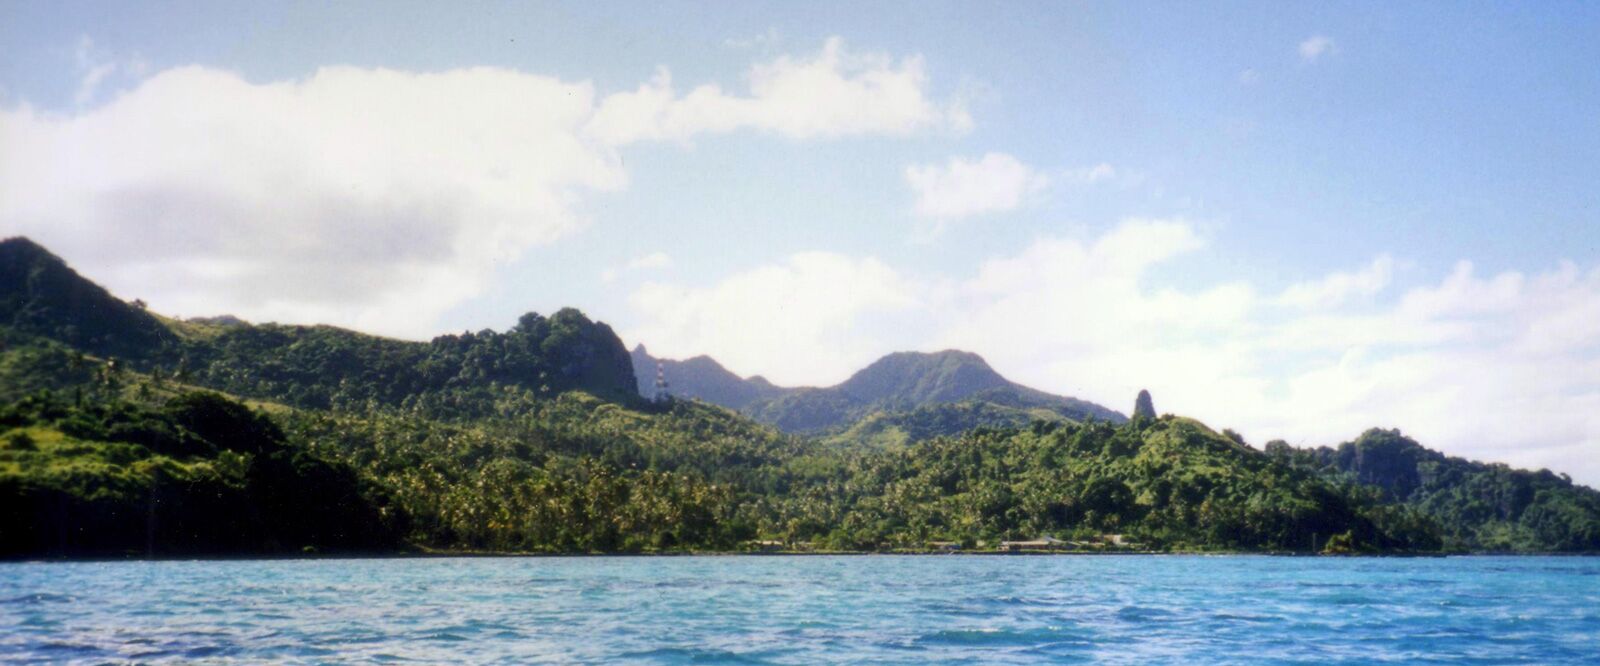 largest-islands-fiji